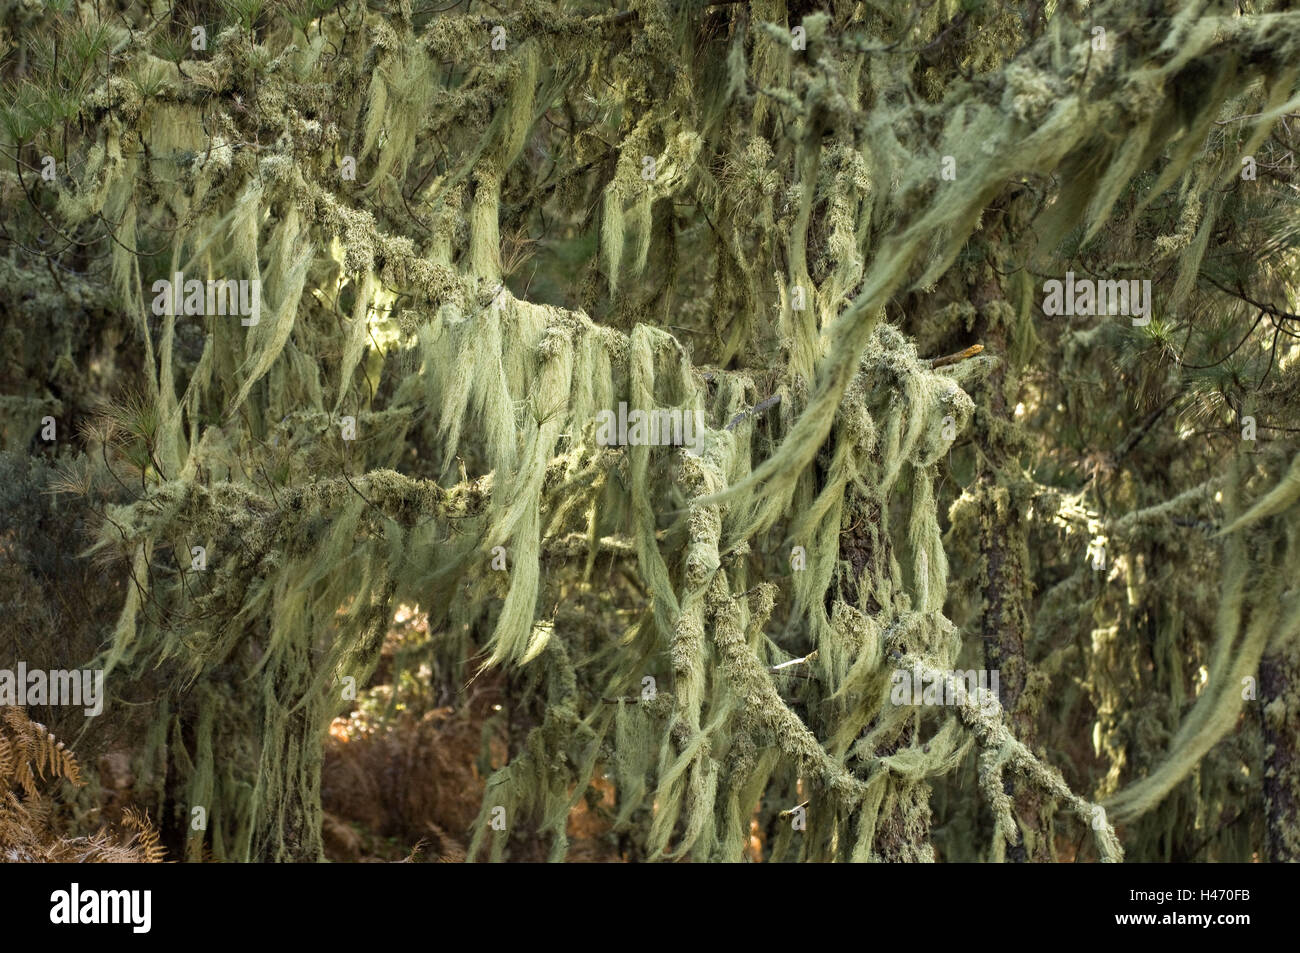 Spain, grain Canaria, lichens, barber's itches, Usnea barbata, close Vega de San Mateo, Stock Photo